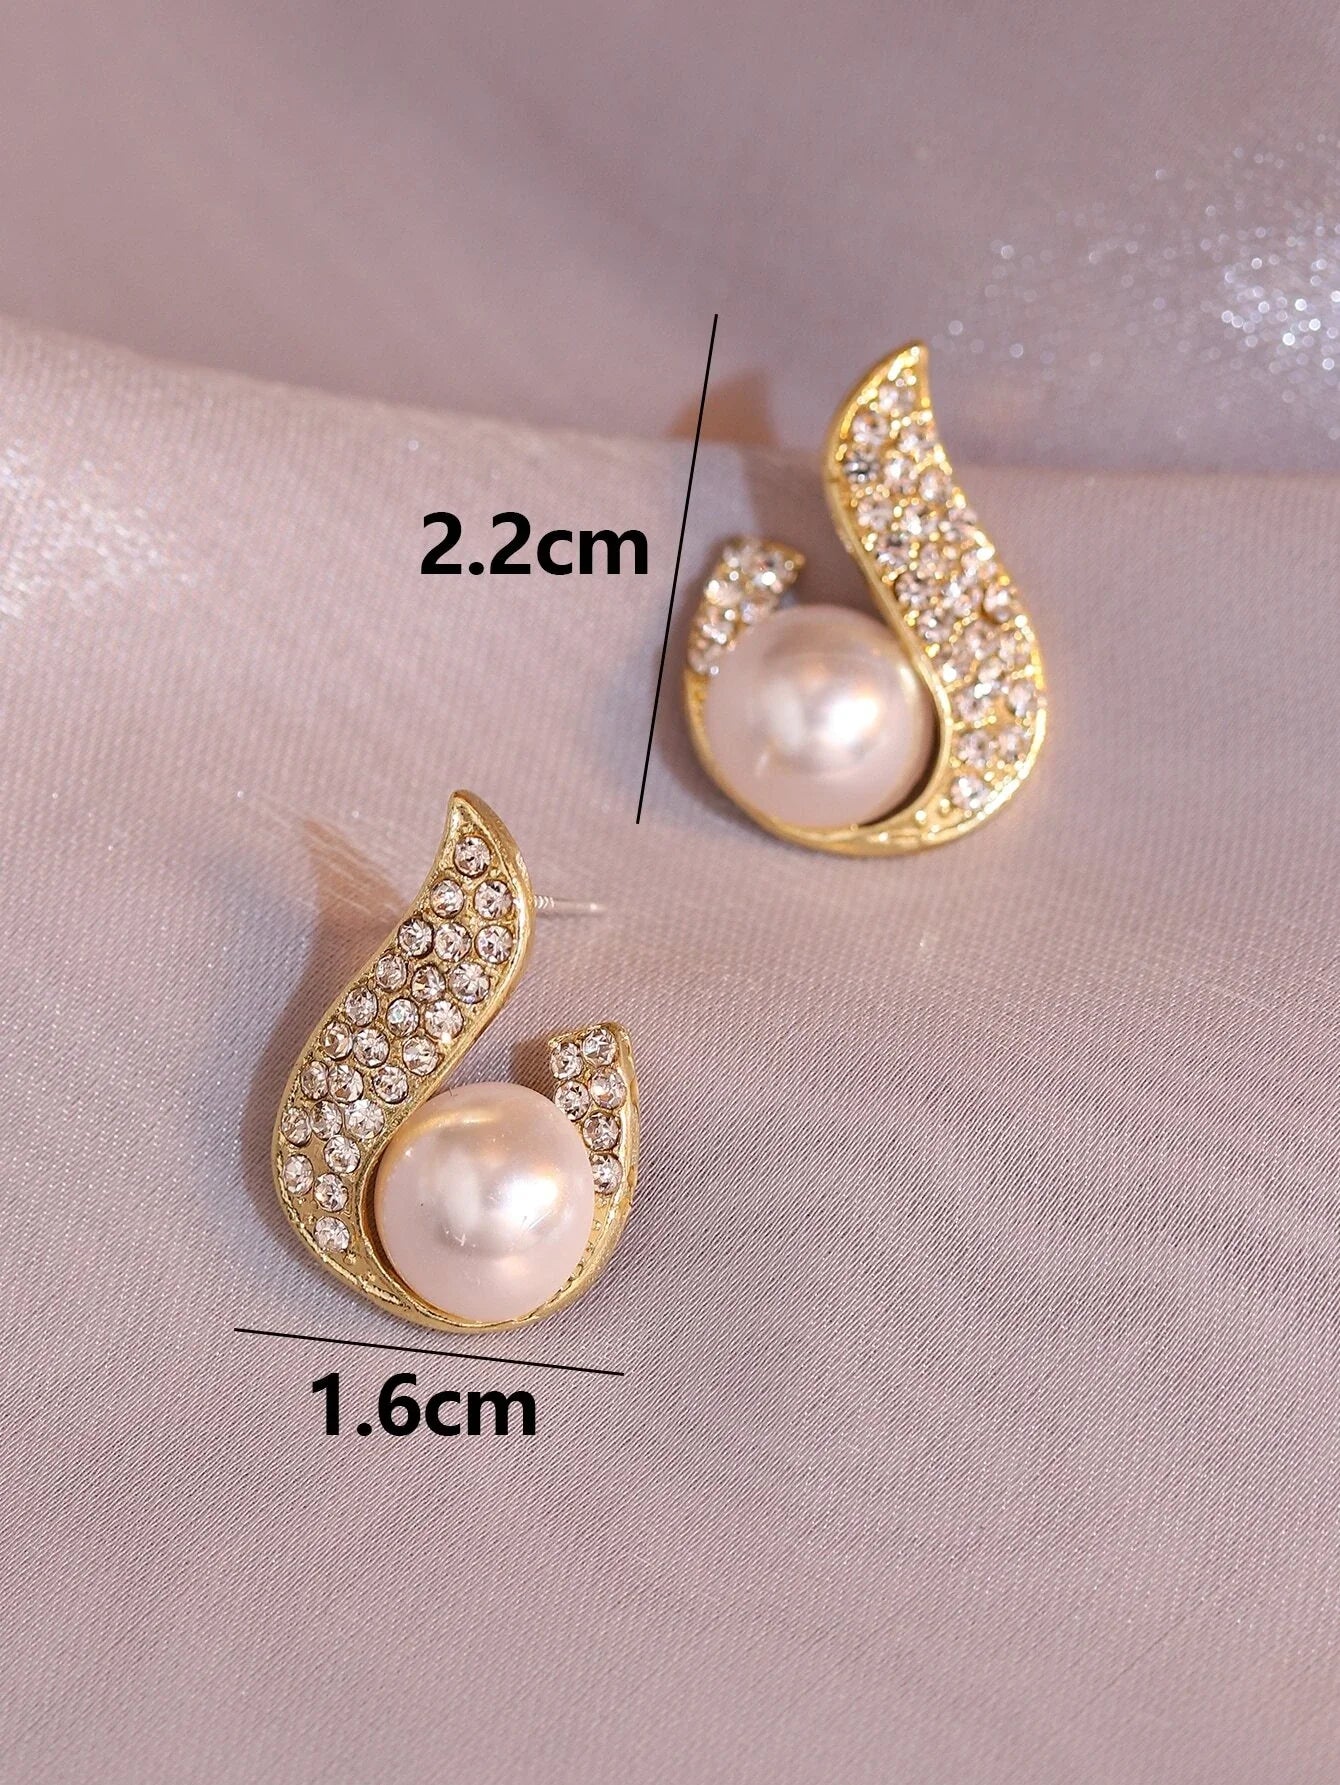 Buy Shein Rhinestone & Faux Pearl Decor Stud Earrings in Pakistan